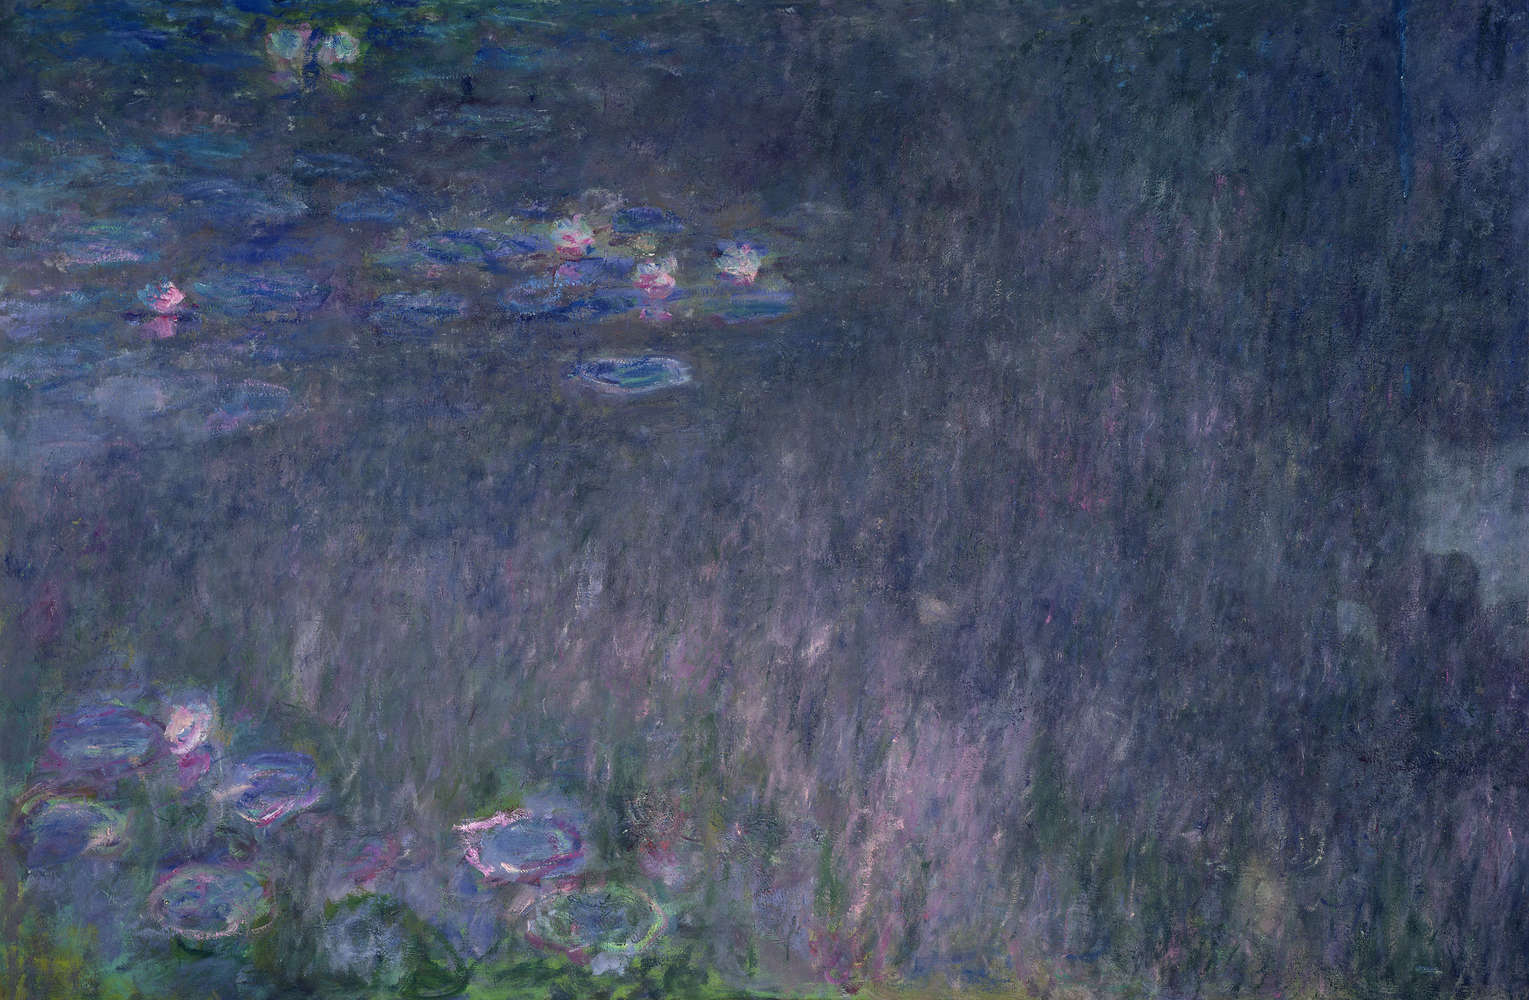             Mural "Nenúfares: reflejo de los árboles" de Claude Monet
        